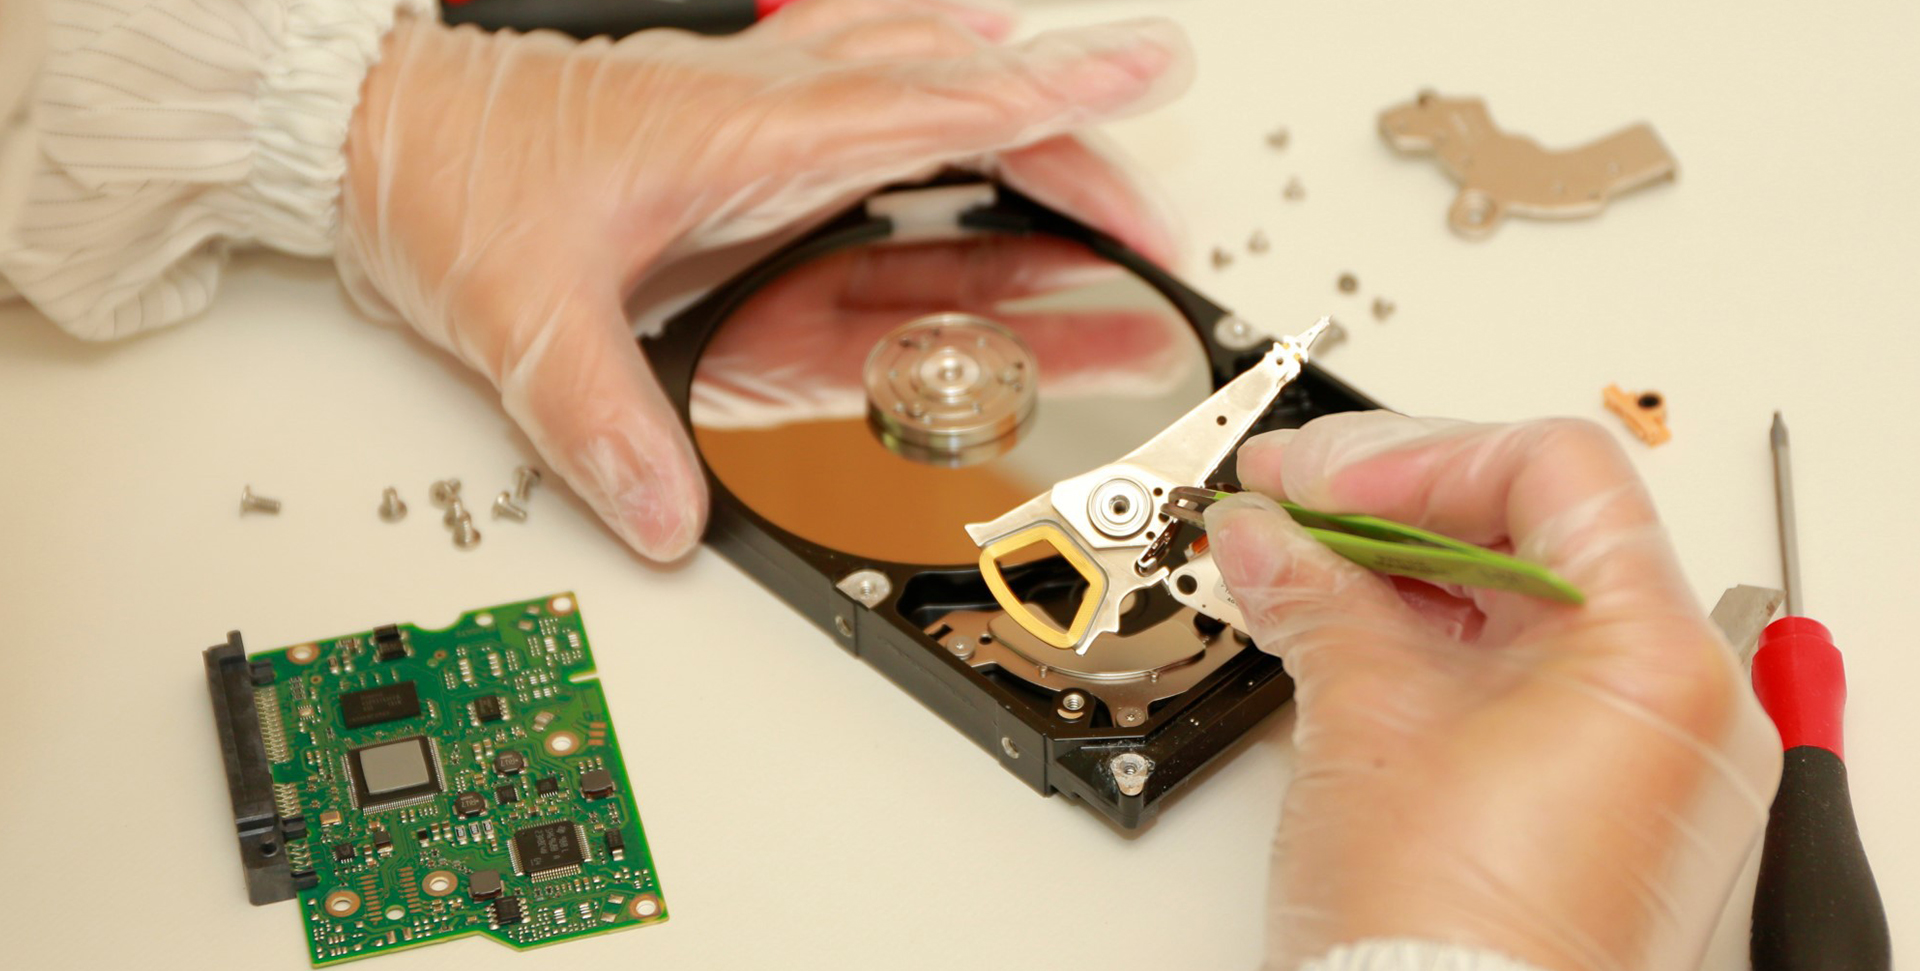 發生硬碟異音的原因主要是硬碟損壞所致。